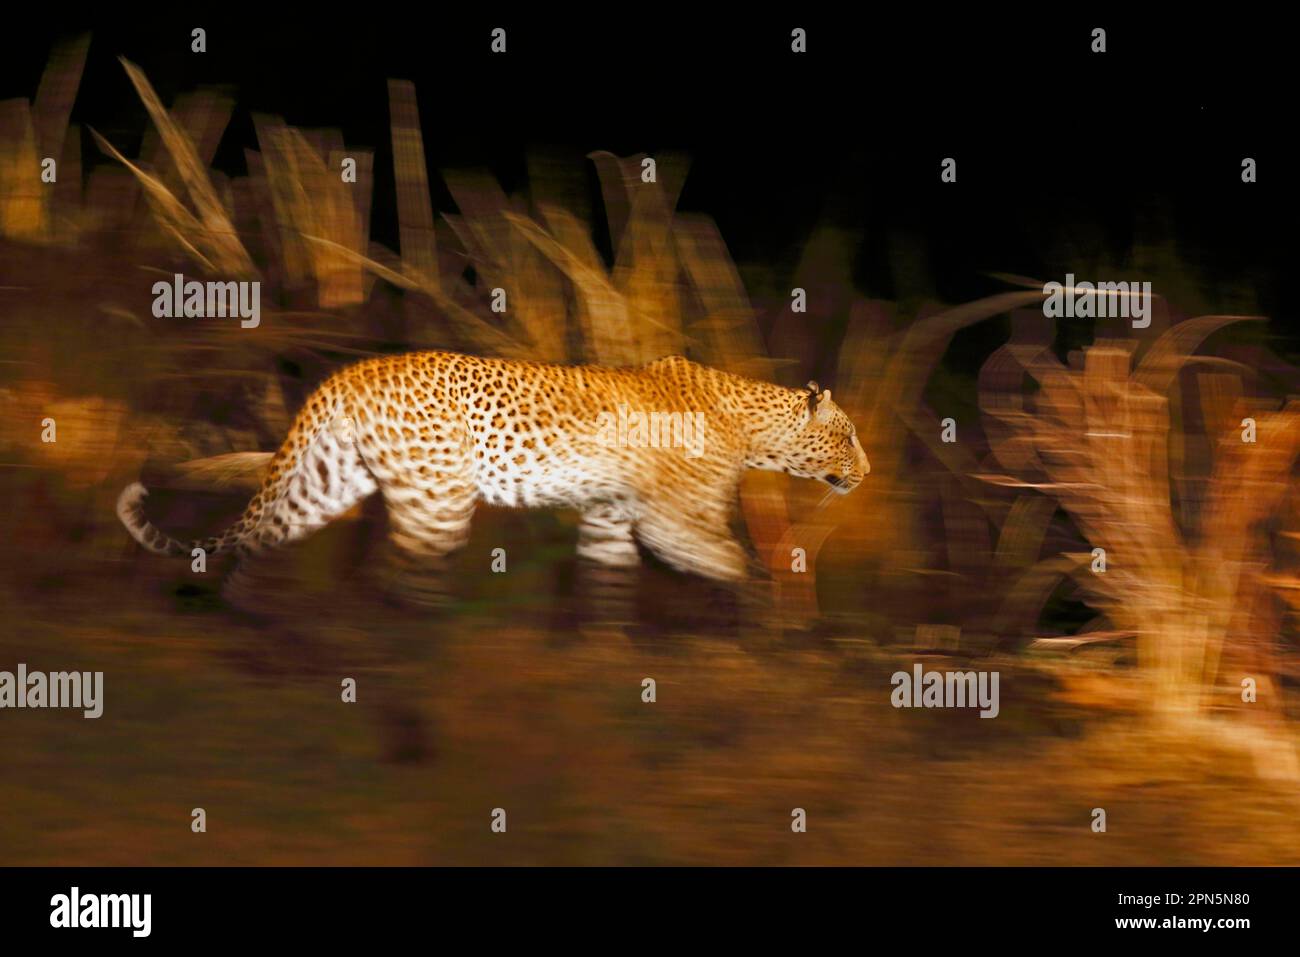 Léopard africain (Panthera pardus pardus) adulte, marchant dans la savane la nuit, mouvement flou, Sud Luangwa N. P. Zambie Banque D'Images